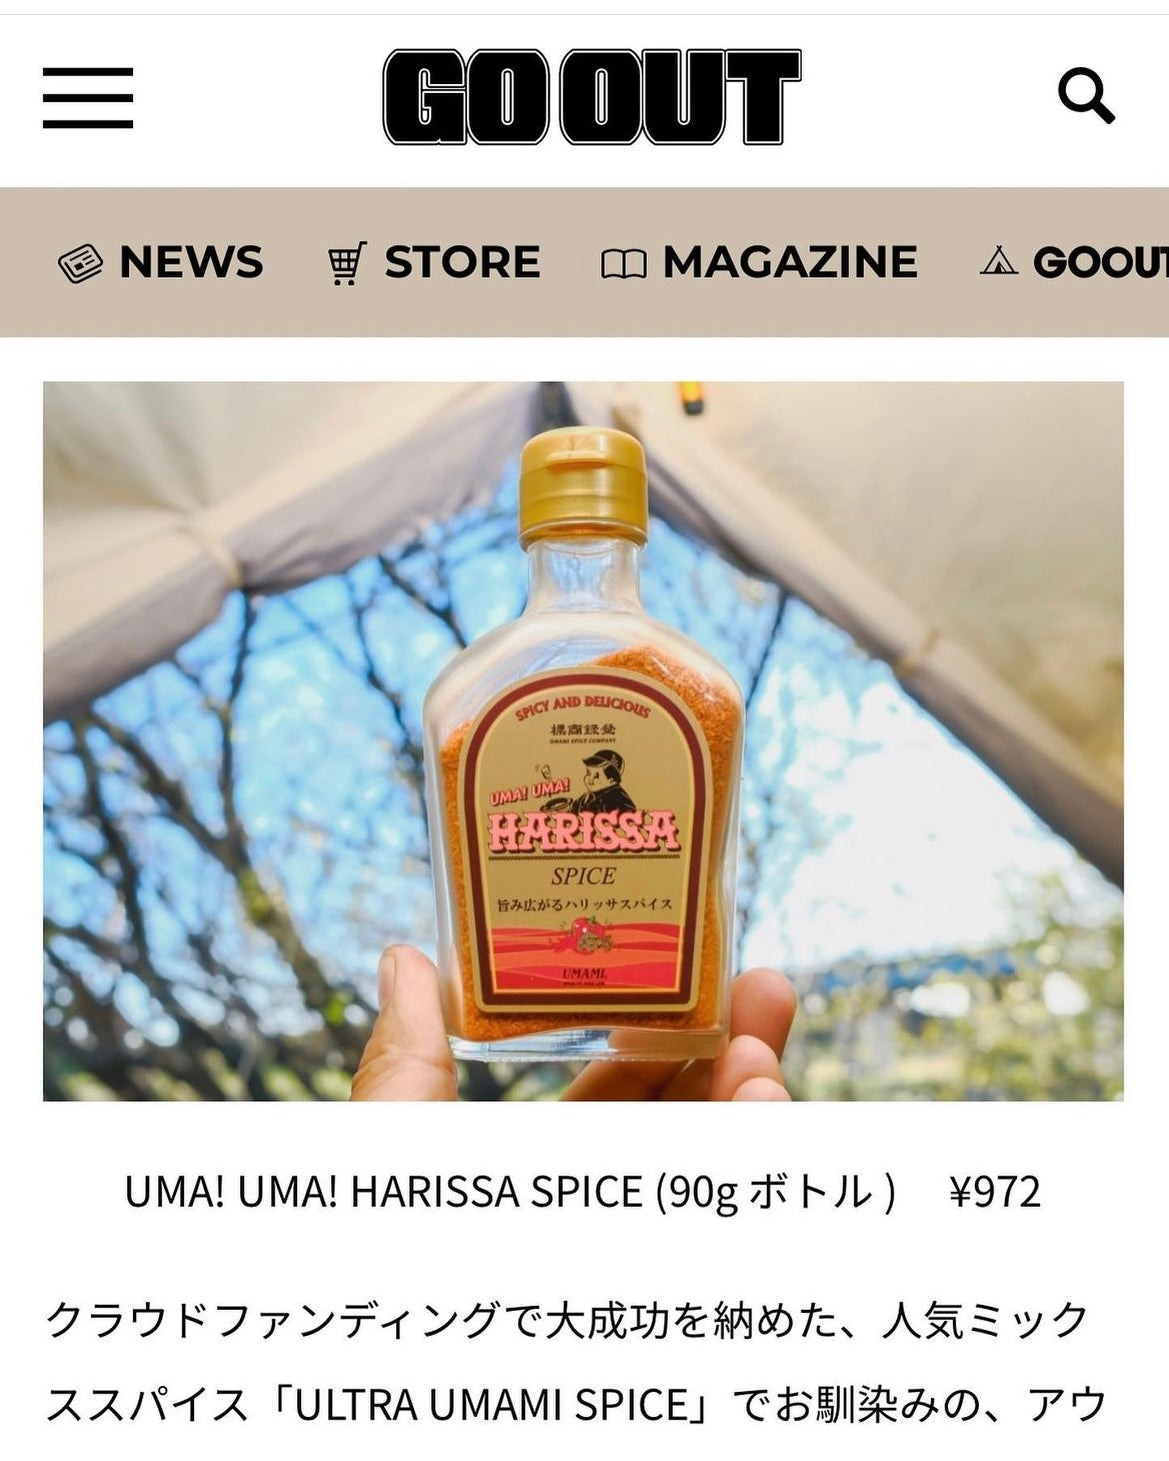 【新発売】UMA! UMA! HARISSA SPICE 90gボトル, THE ULTRA UMAMI SPICE 100gボトル, 2本セット